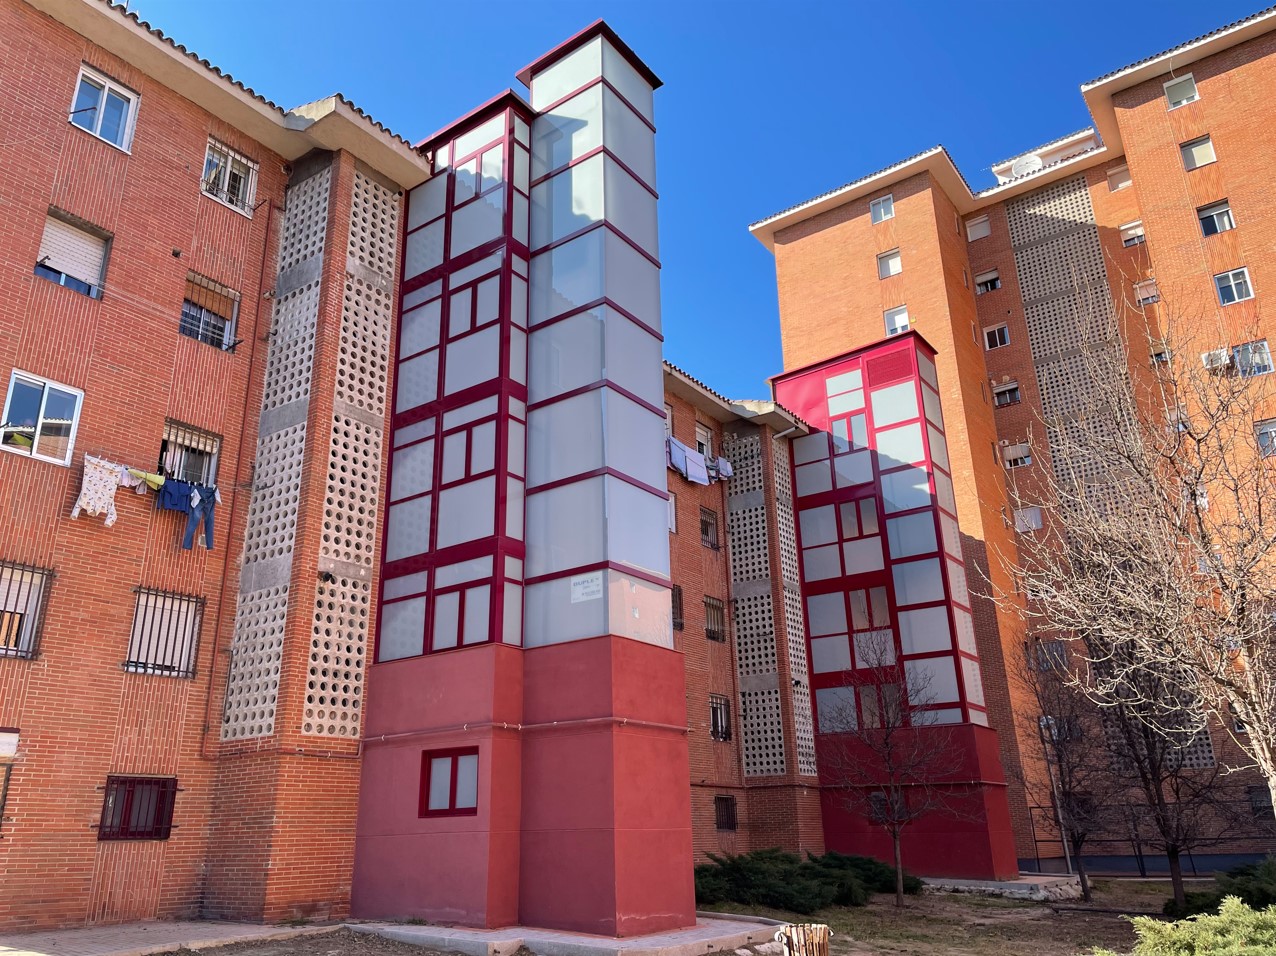 Instalación de dos ascensores en la fachada de un edificio residencial